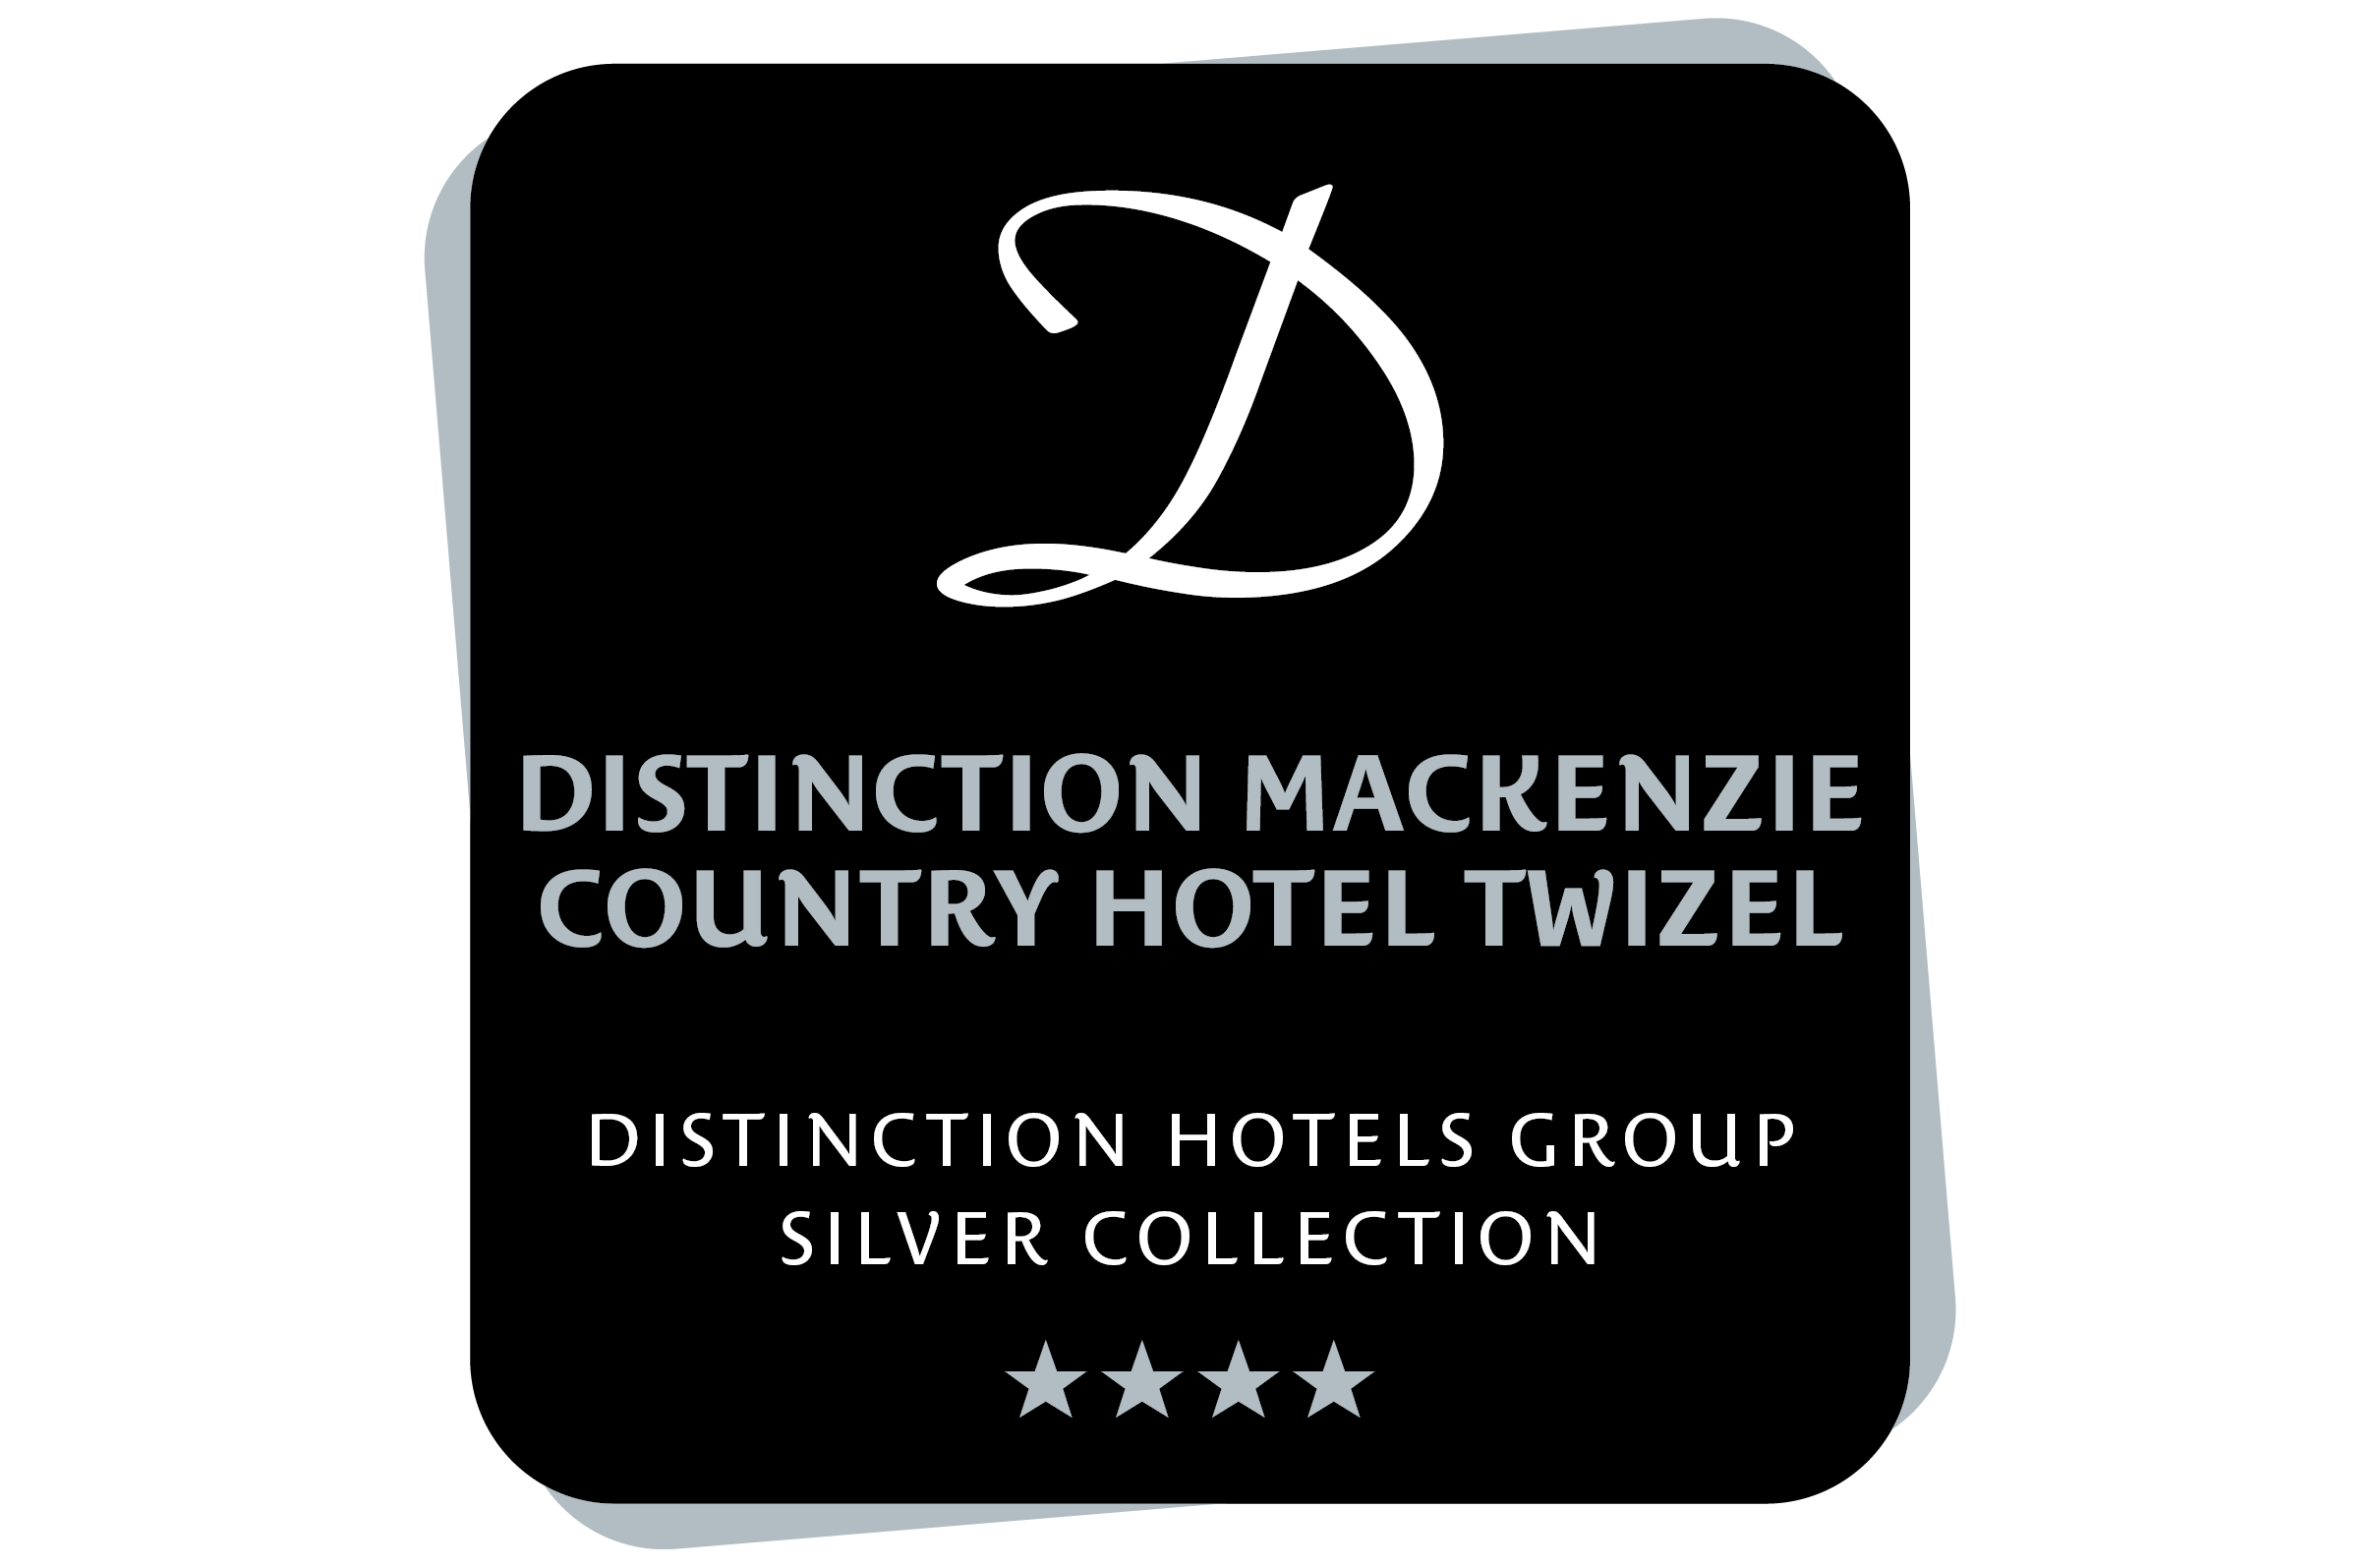 
Distinction Mackenzie Country Hotel Twizel